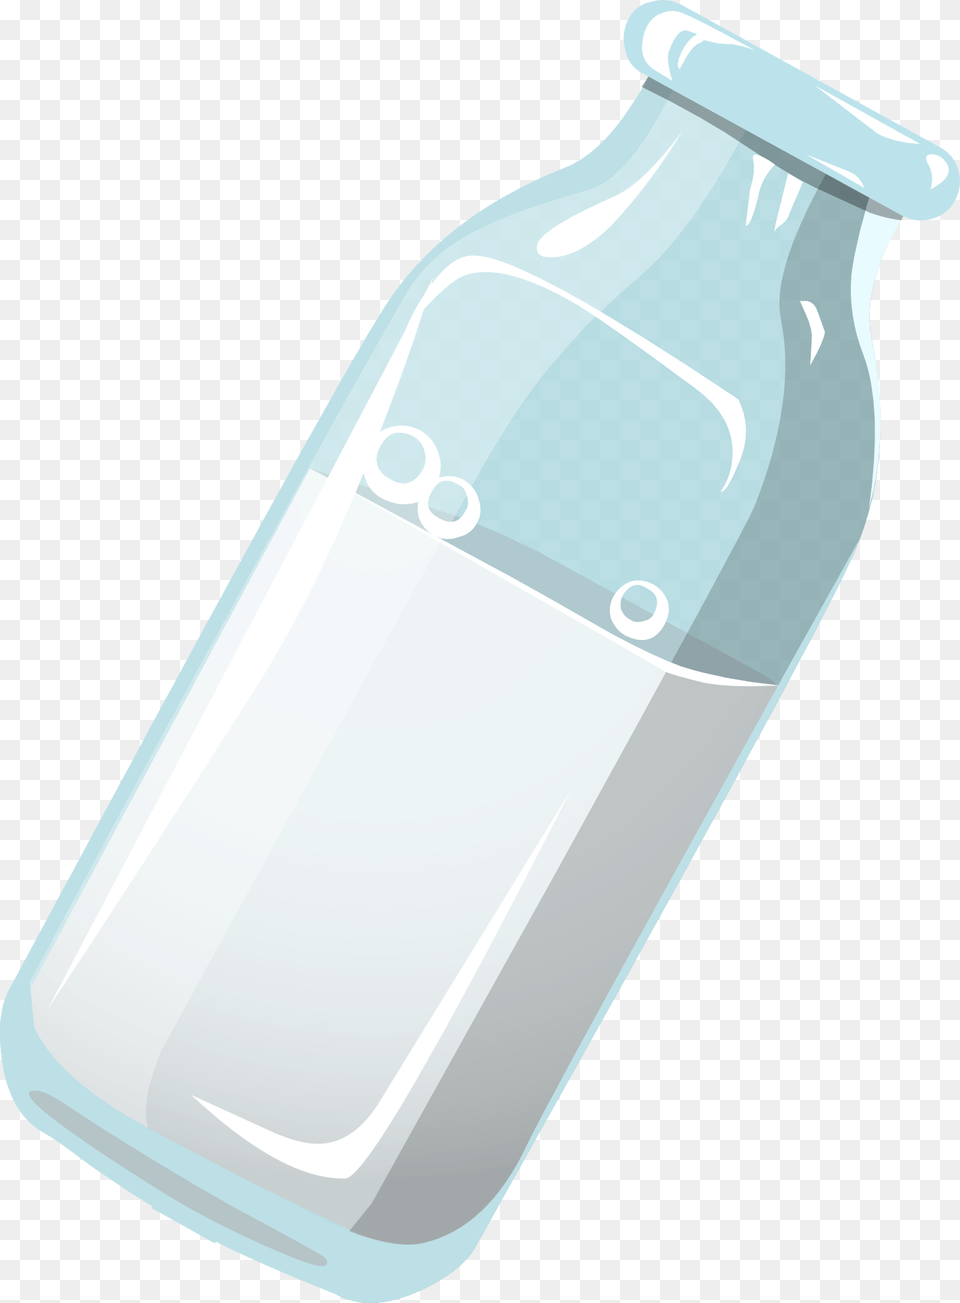 Gambar Animasi Botol Susu Sapi, Bottle, Bow, Weapon, Water Bottle Png